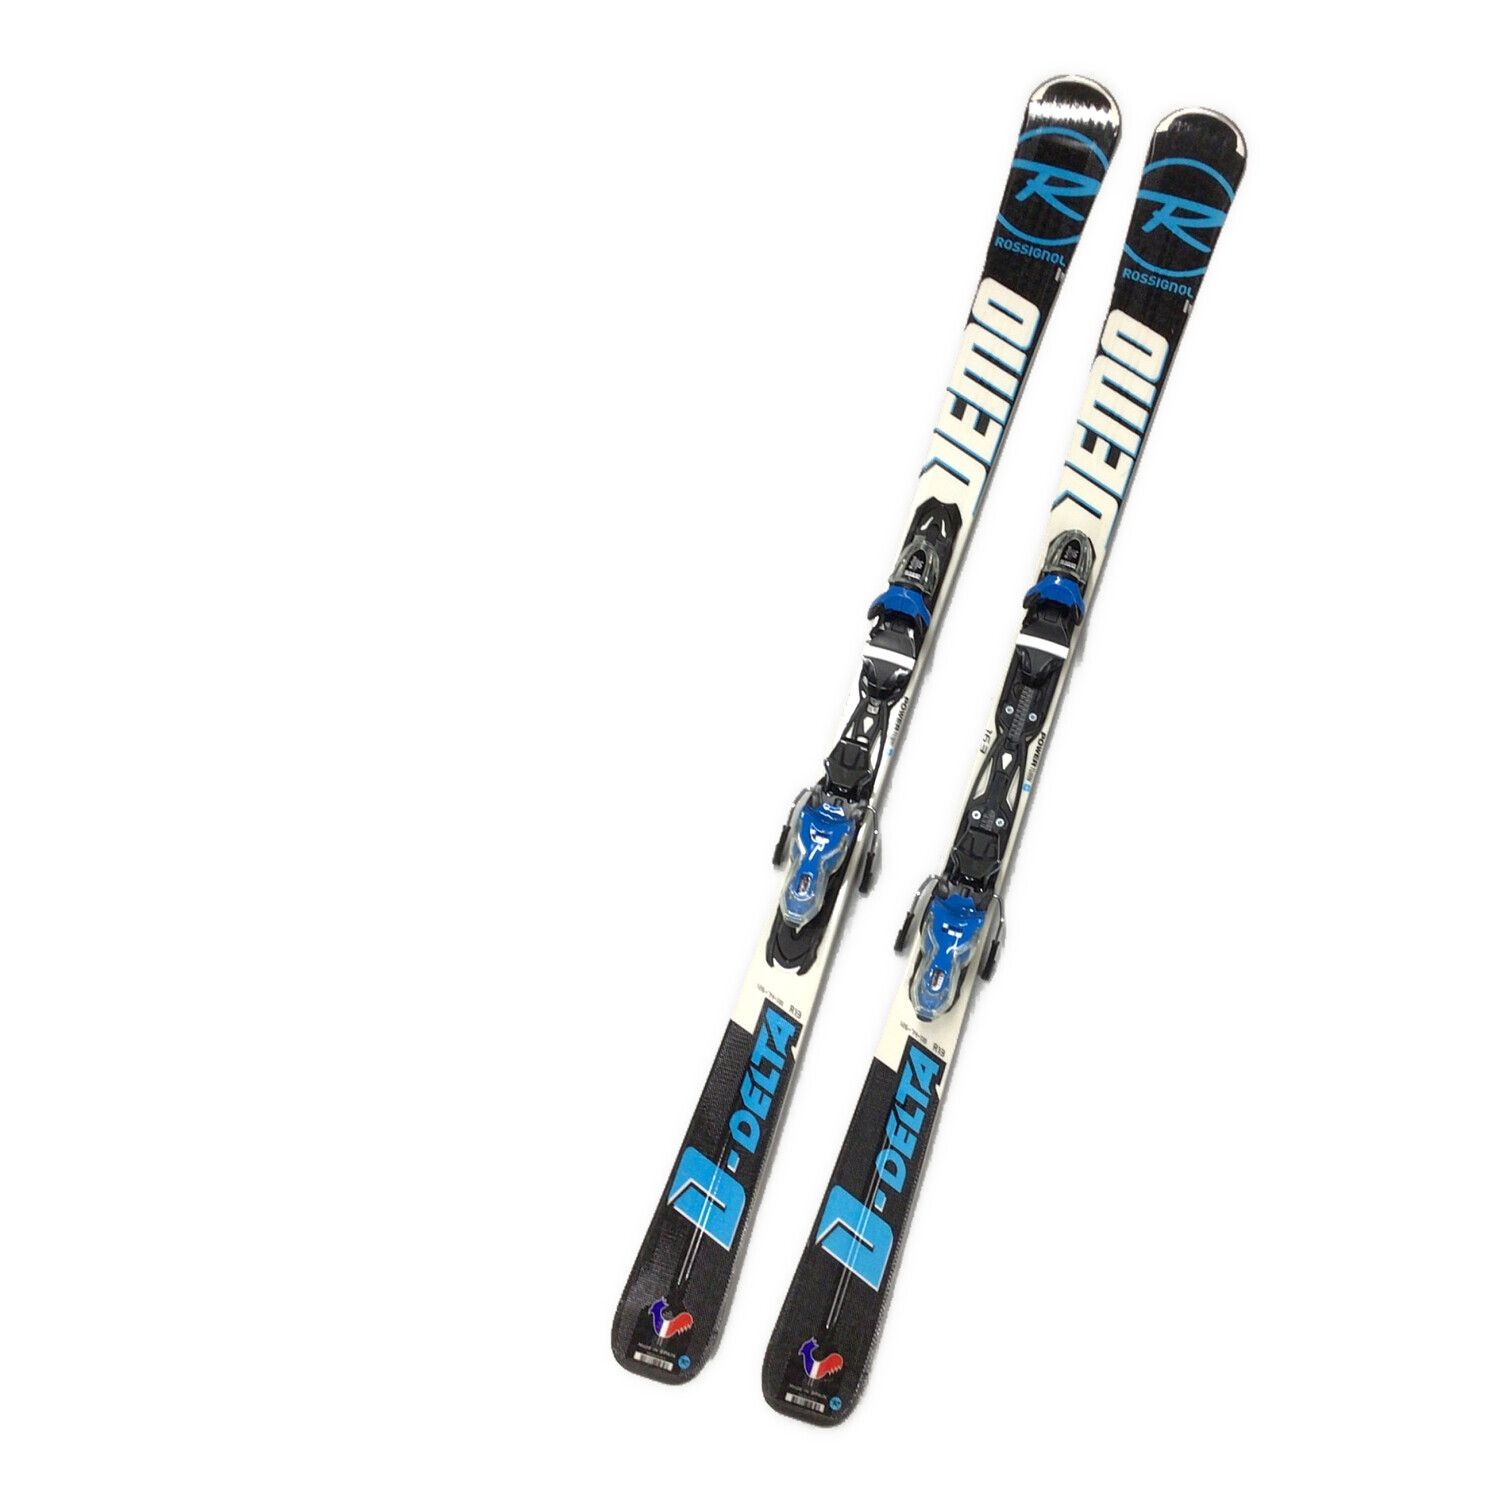 日本初の ROSSIGNOL 10D Demostyle スキー158cm・ストックセット 